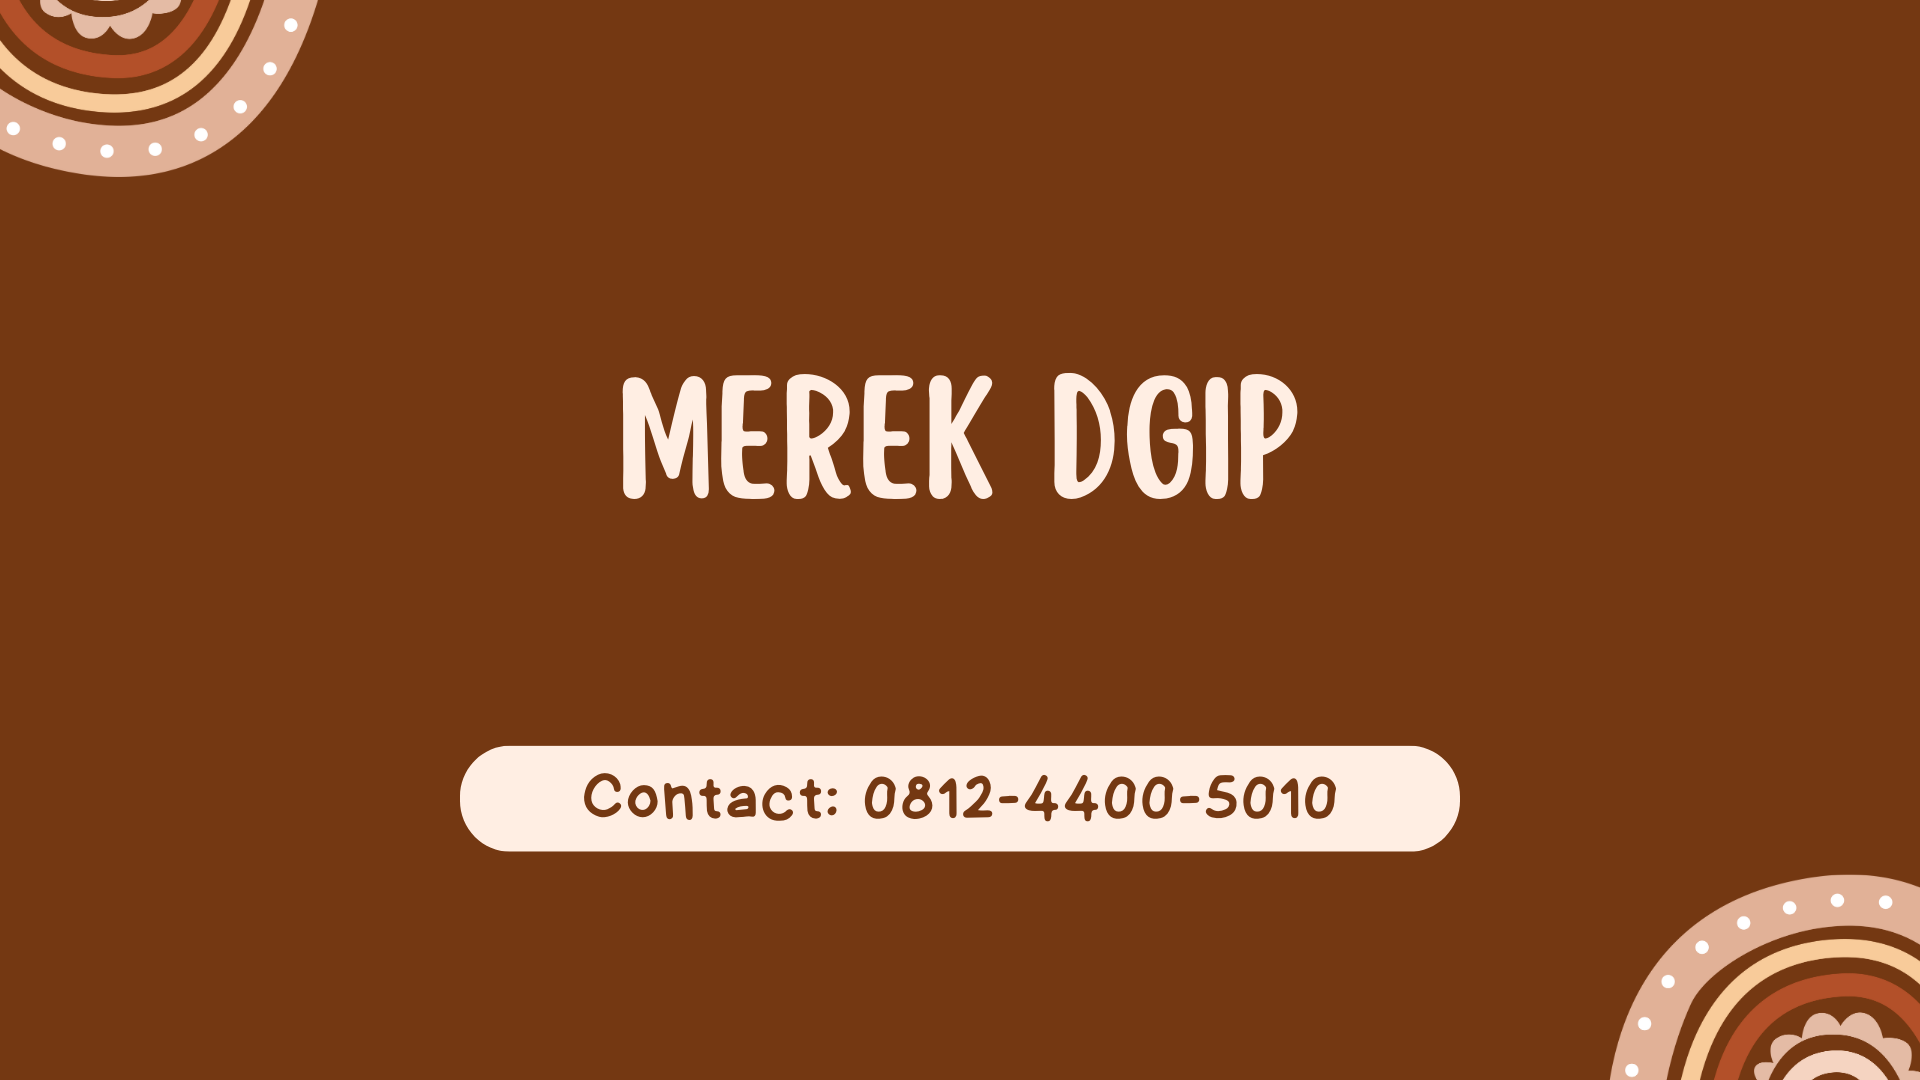 Merek DGIP